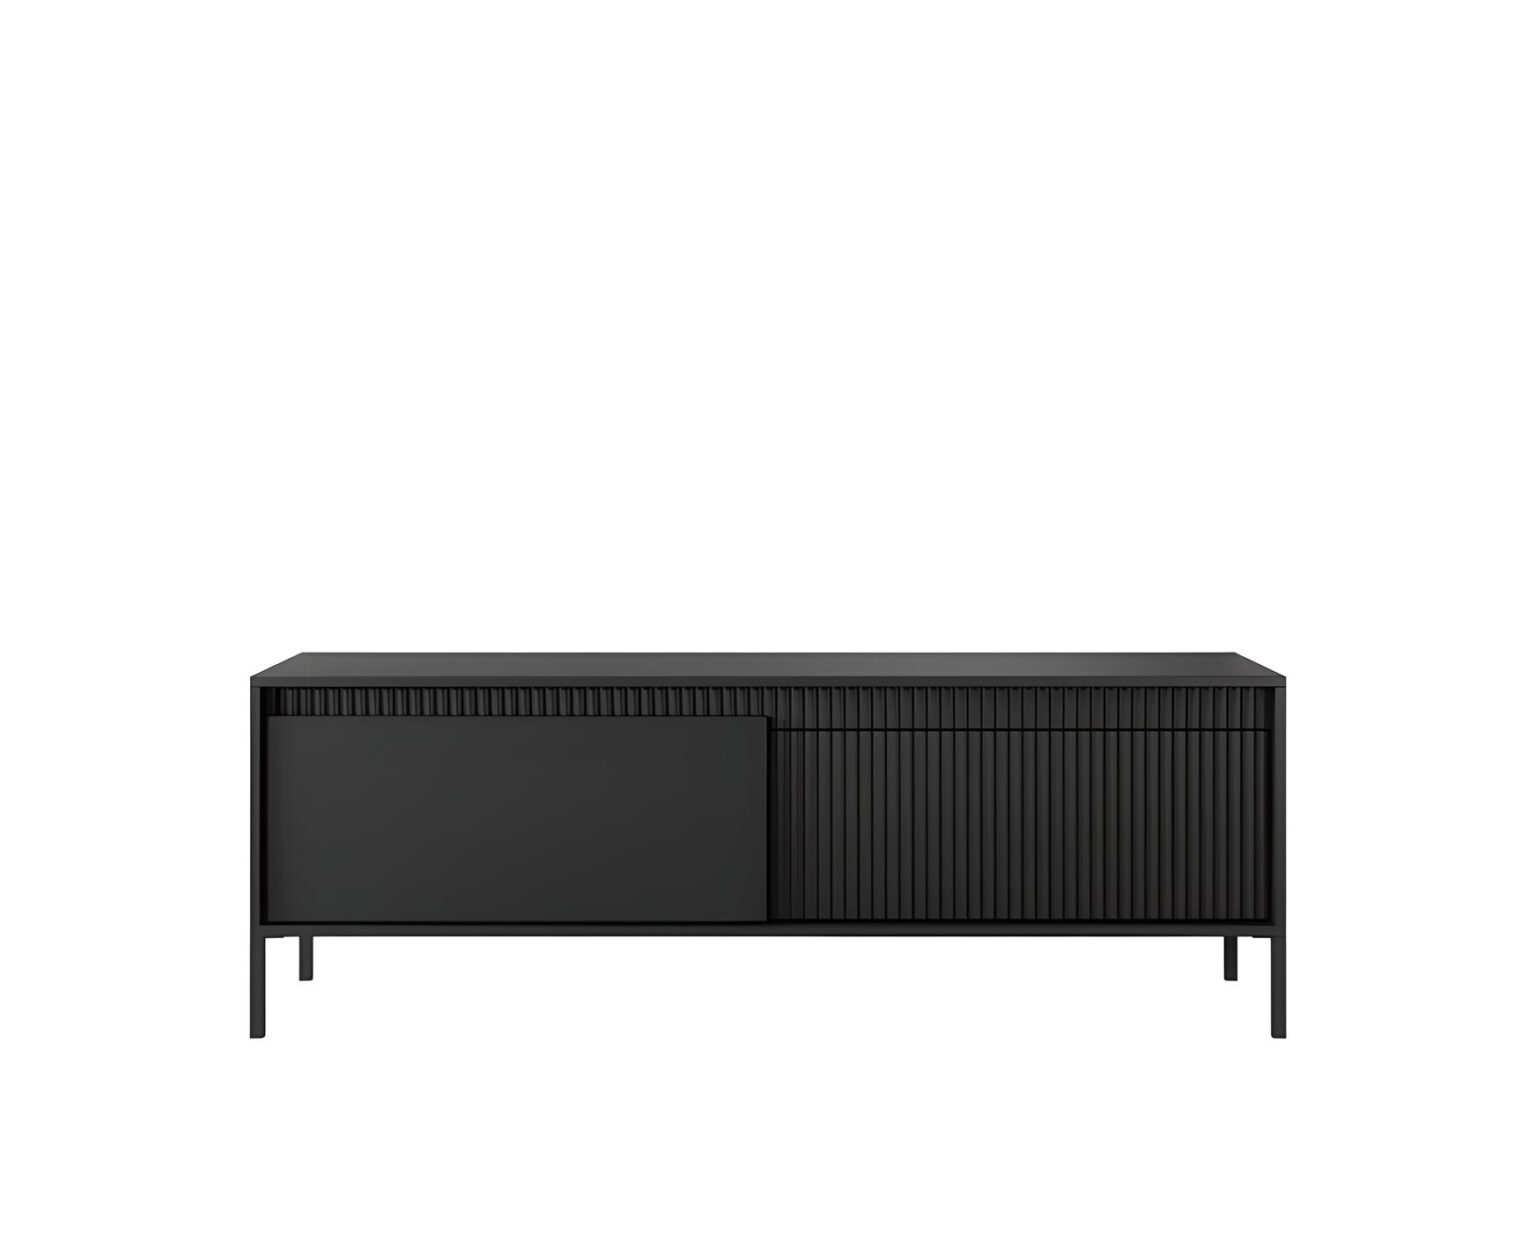 ROMANE 153,5 cm Meuble télé noir, 2 portes, 2 étagères, un choix sophistiqué pour un agencement moderne du salon